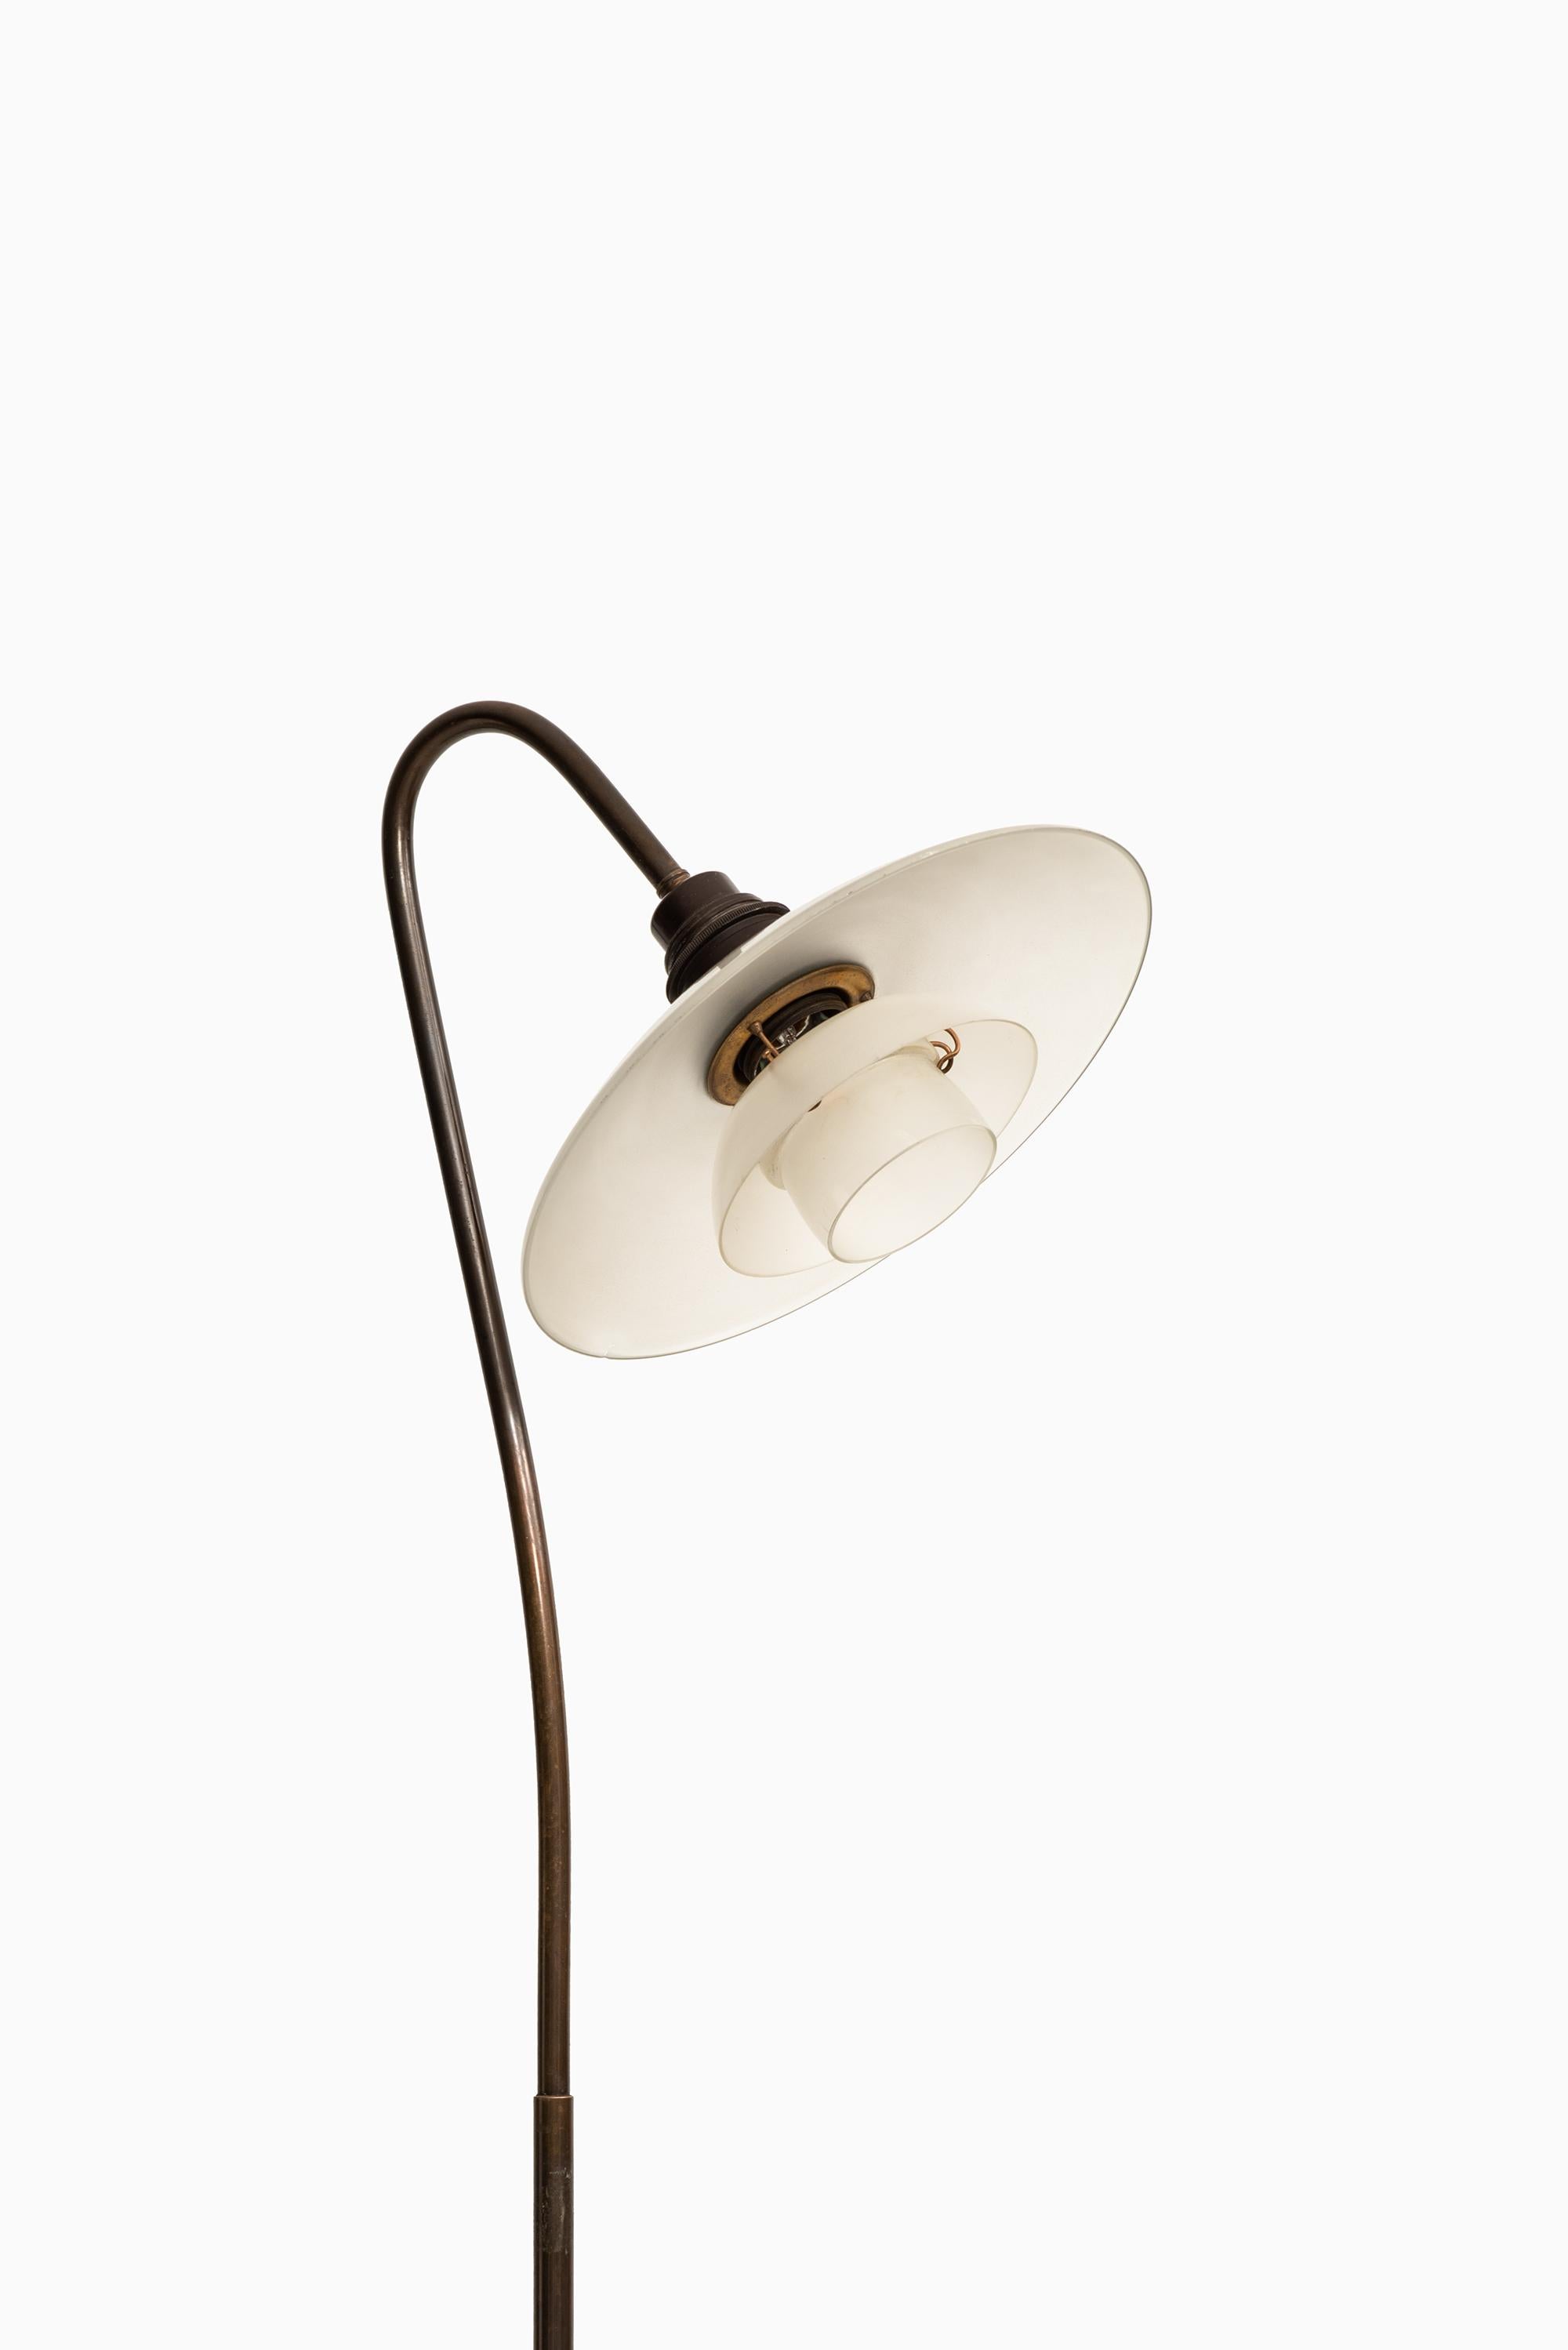 Brass Poul Henningsen Floor Lamp Model Syvtallet by Louis Poulsen in Denmark For Sale